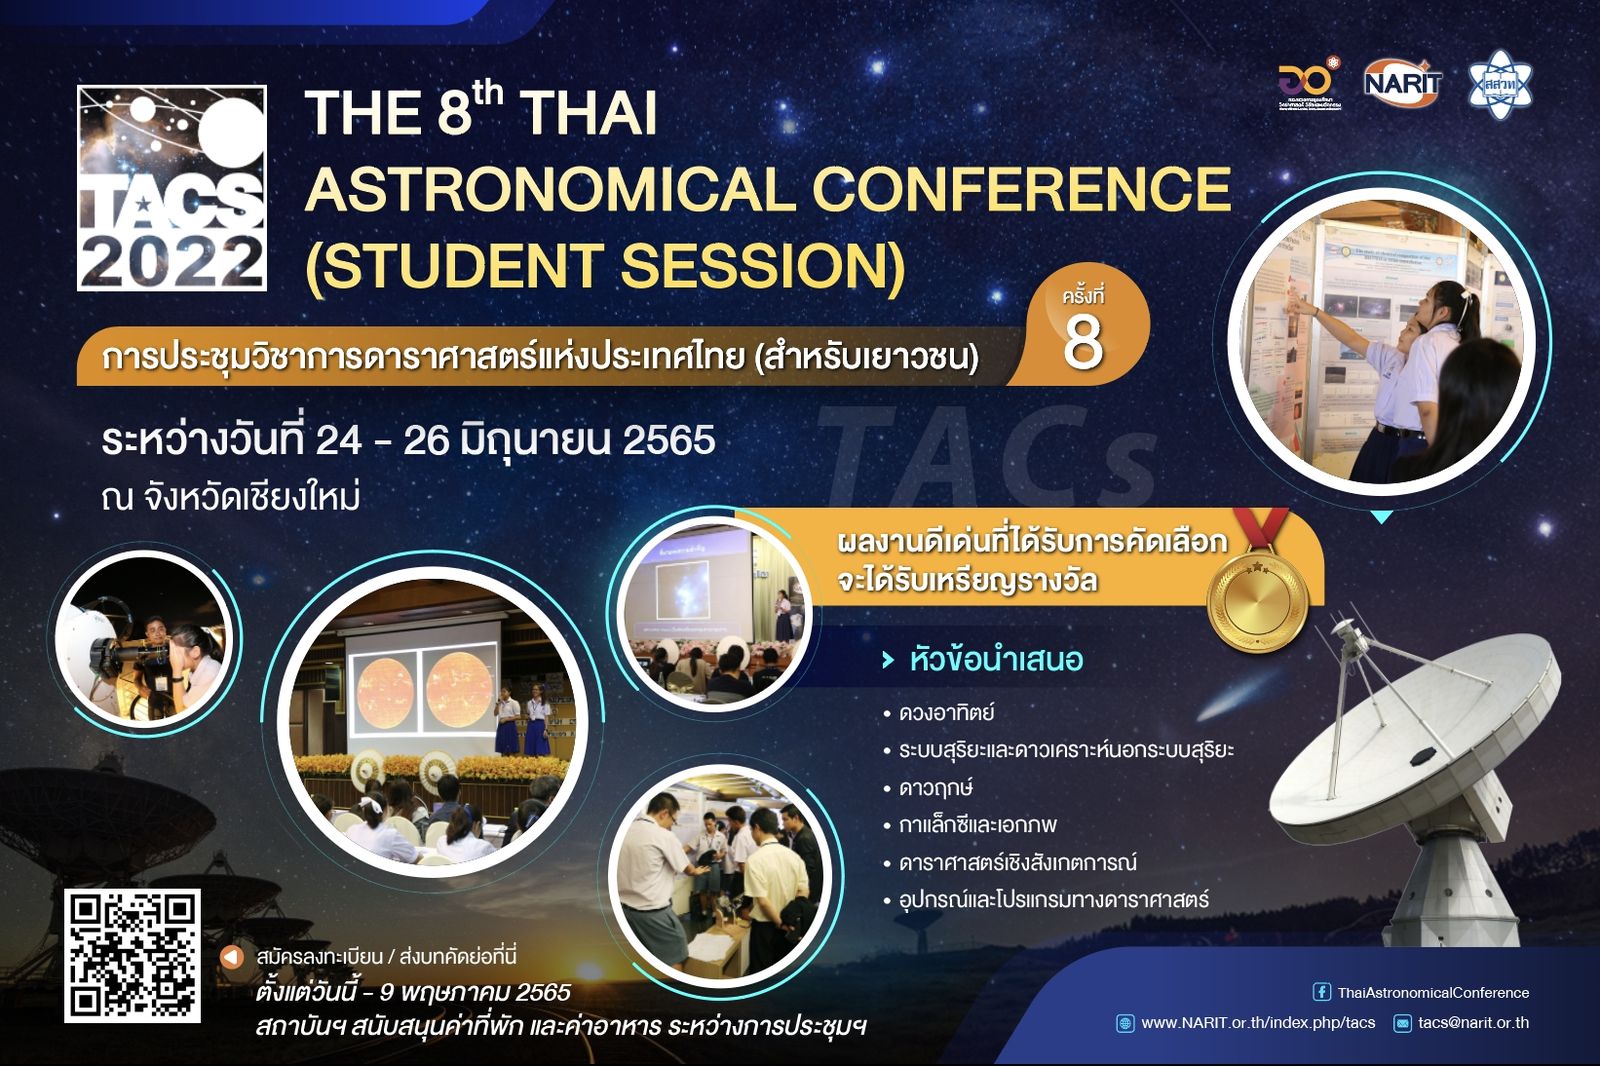 ประกาศรายชื่อผู้ผ่านการคัดเลือกเข้าร่วมการประชุุมวิชาการดาราศาสตร์แห่งประเทศไทย (สำหรับเยาวชน) ครั้งที่ 8